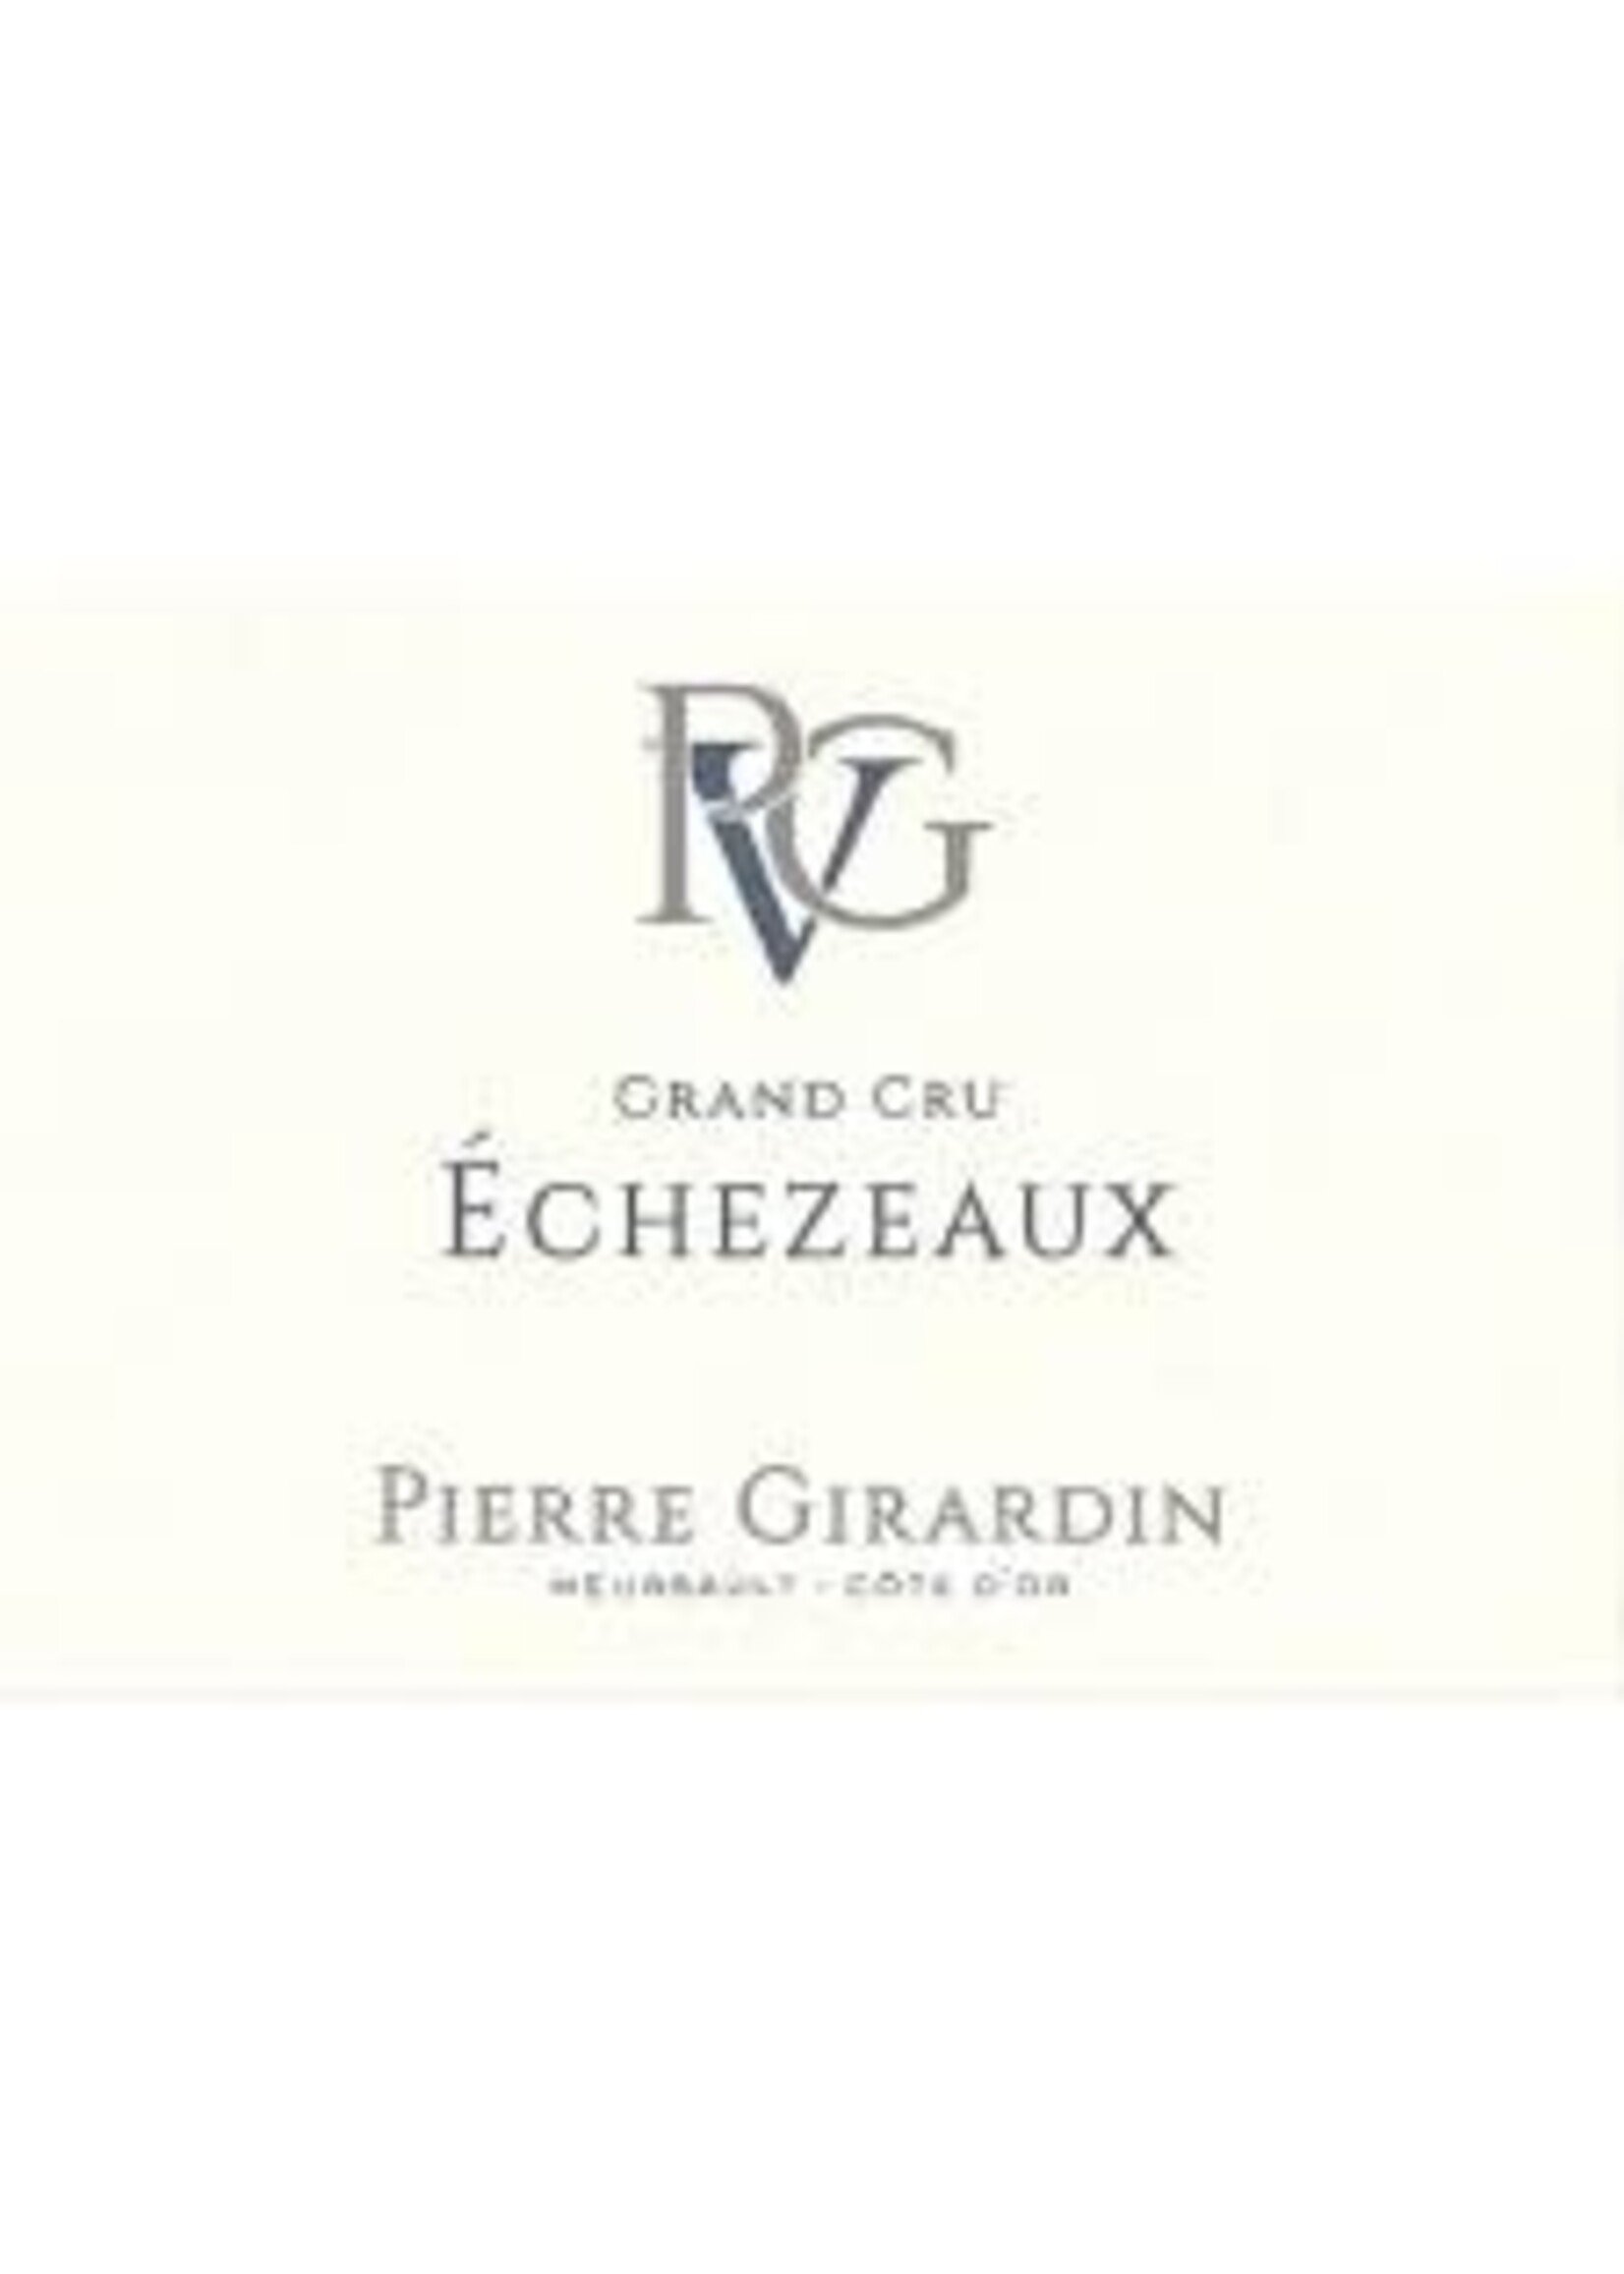 Pierre Girardin 2021 Echezeaux Grand Cru 1.5L